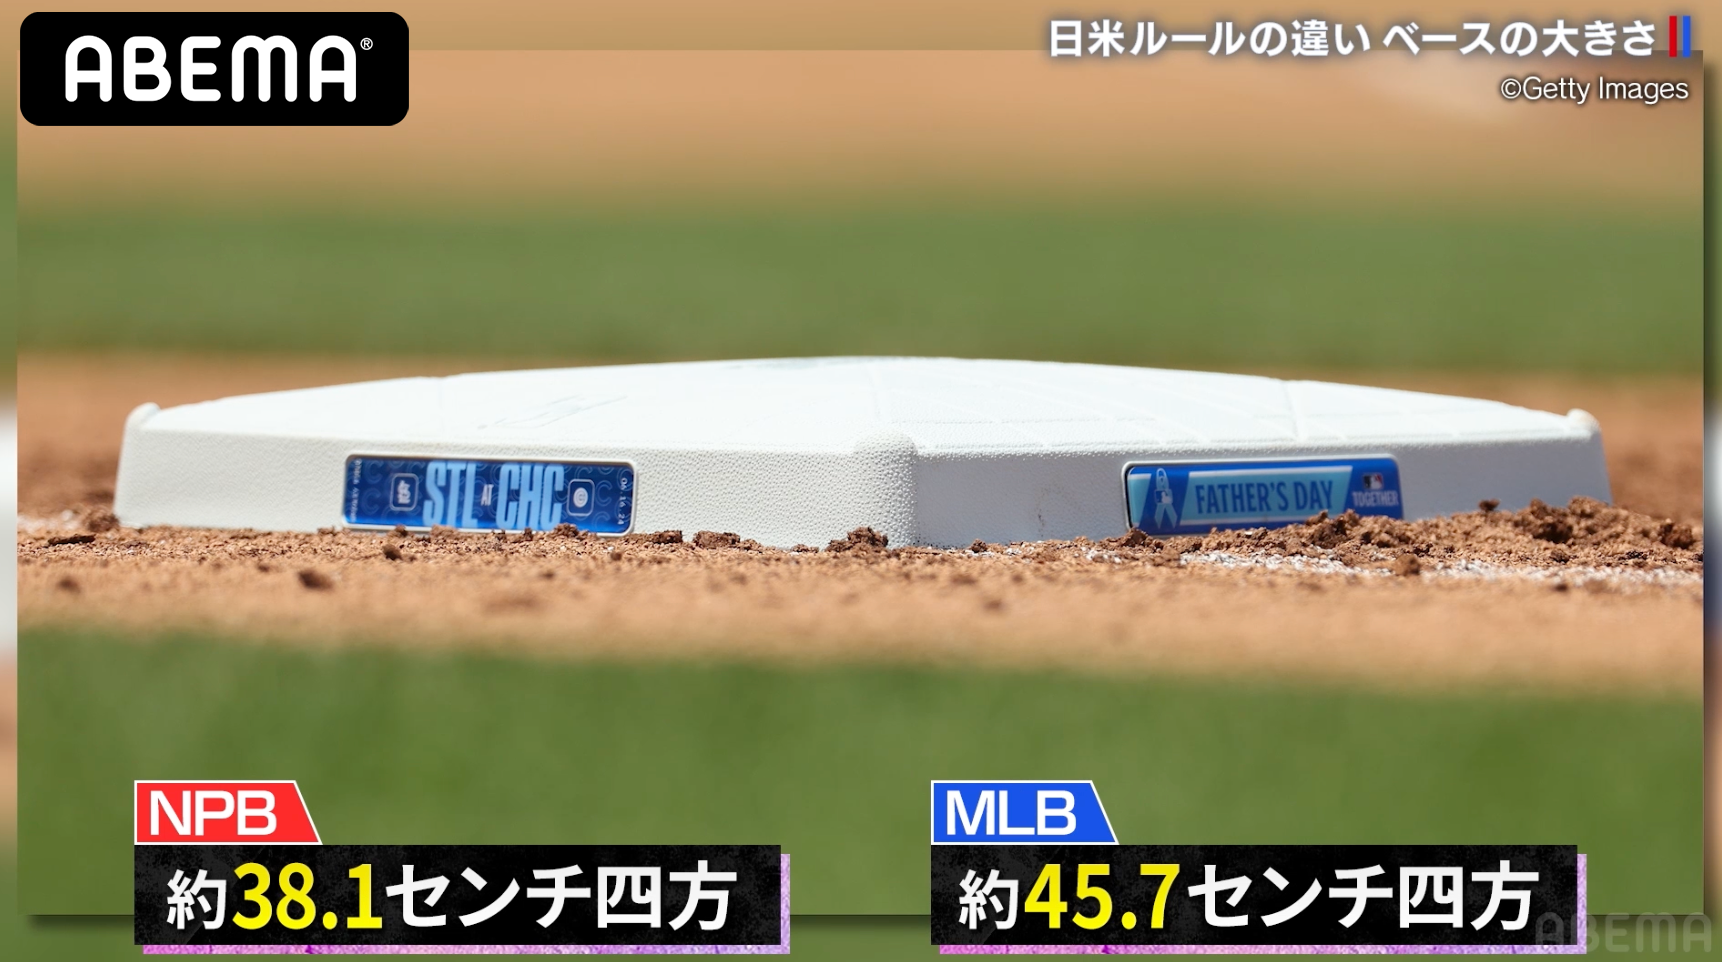 約8cm大きいMLBのベース 日本のプロ野球とサイズが違う理由とは？【アベマでMLB】